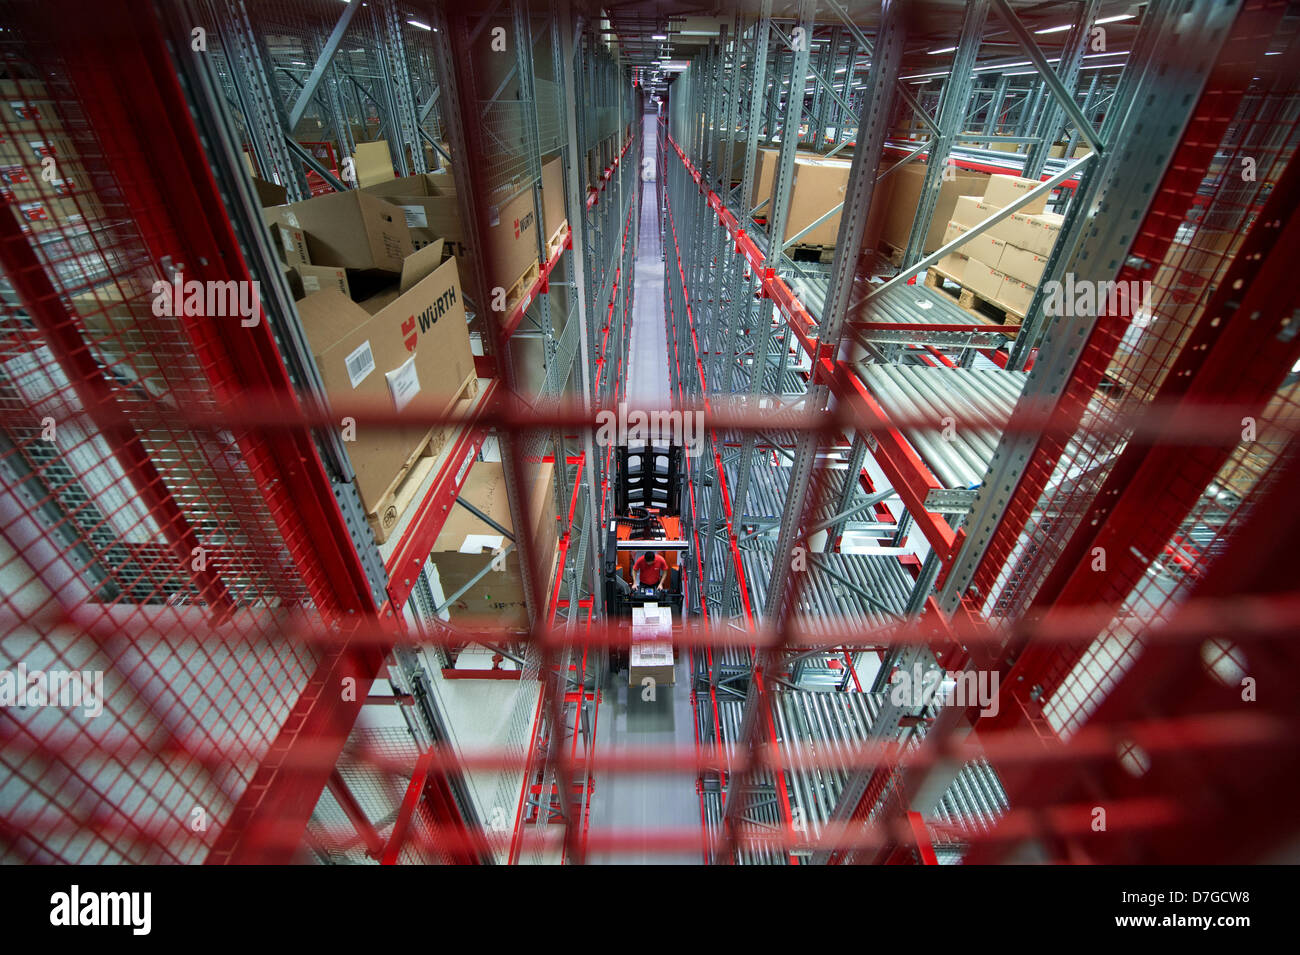 Ein Mitarbeiter des Arbeitskreises Wuerth fährt ein Gabelstapler im Logistikzentrum in Künzelsau, Deutschland, 7. Mai 2013. Wuerth erwartet einen leichten Anstieg im Umsatz in diesem Jahr trotz der anhaltenden Wirtschaftskrise. Foto: MARIJAN MURAT Stockfoto